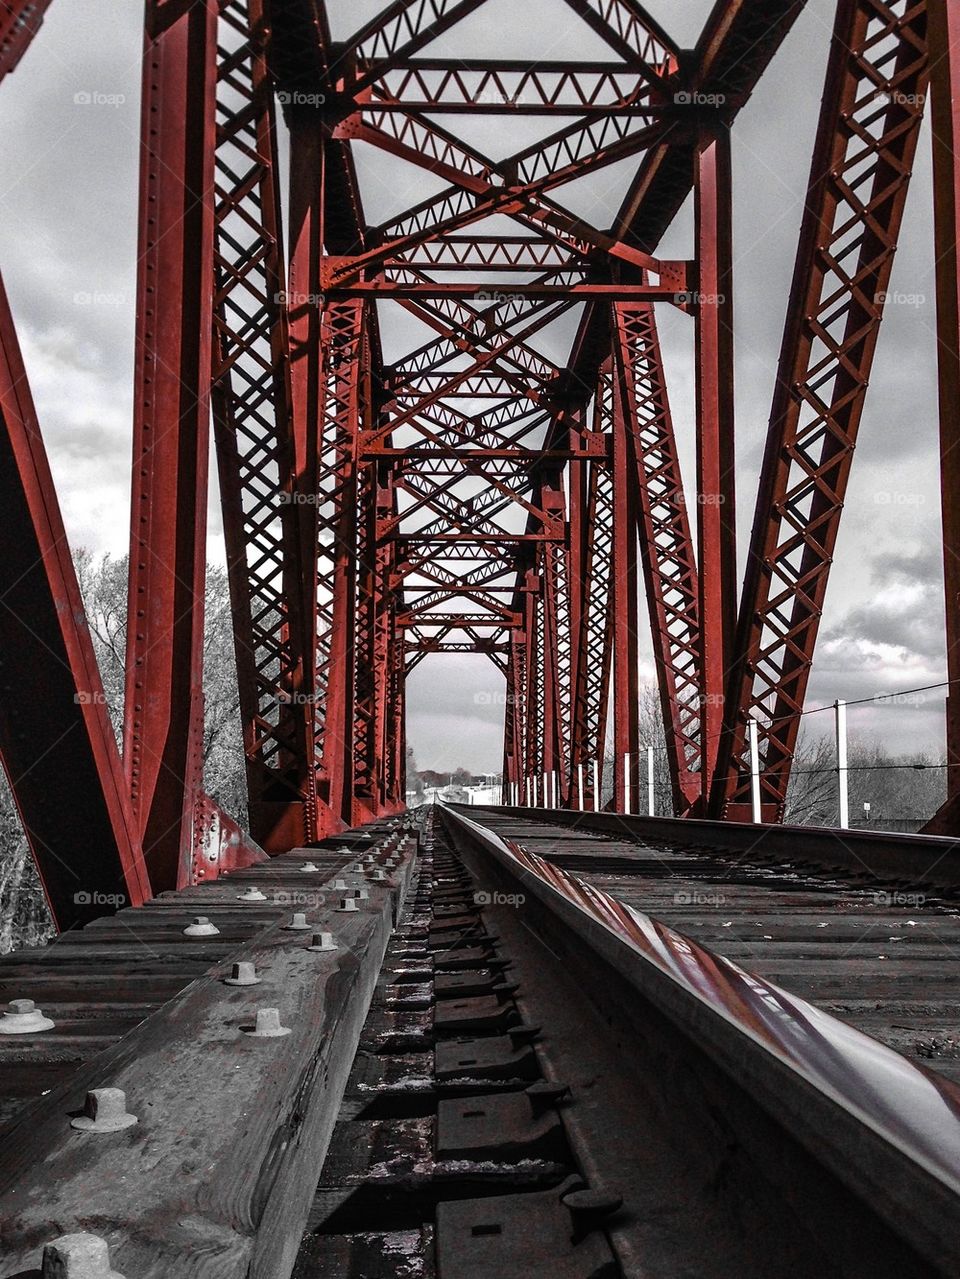 Union Pacific Railroad Bridge